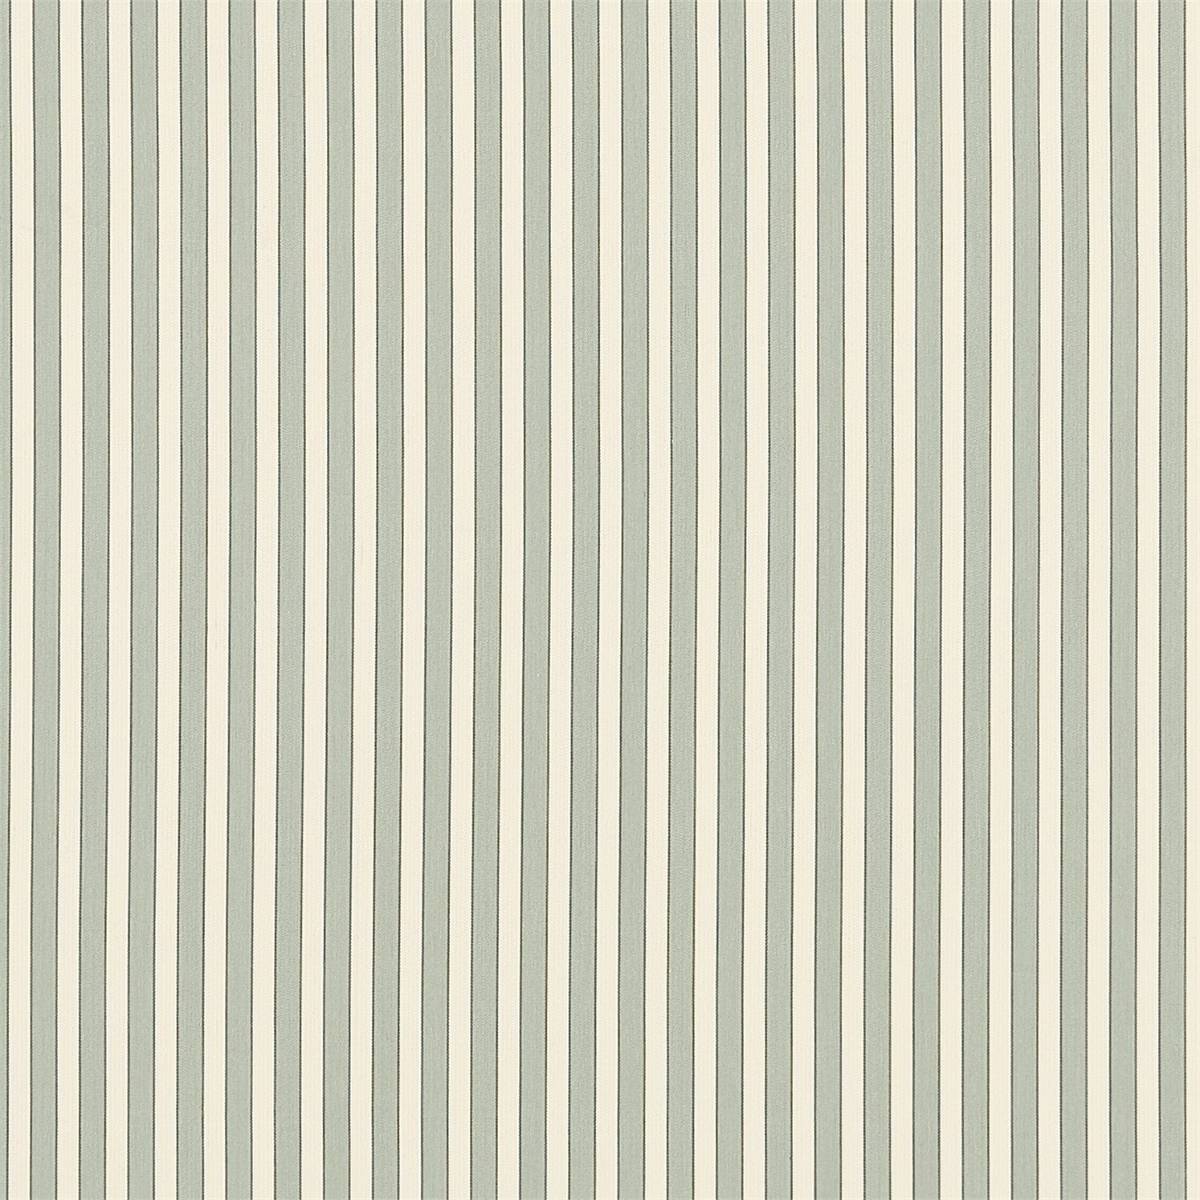 Sutton Sea Blue/Cream Fabric by Sanderson